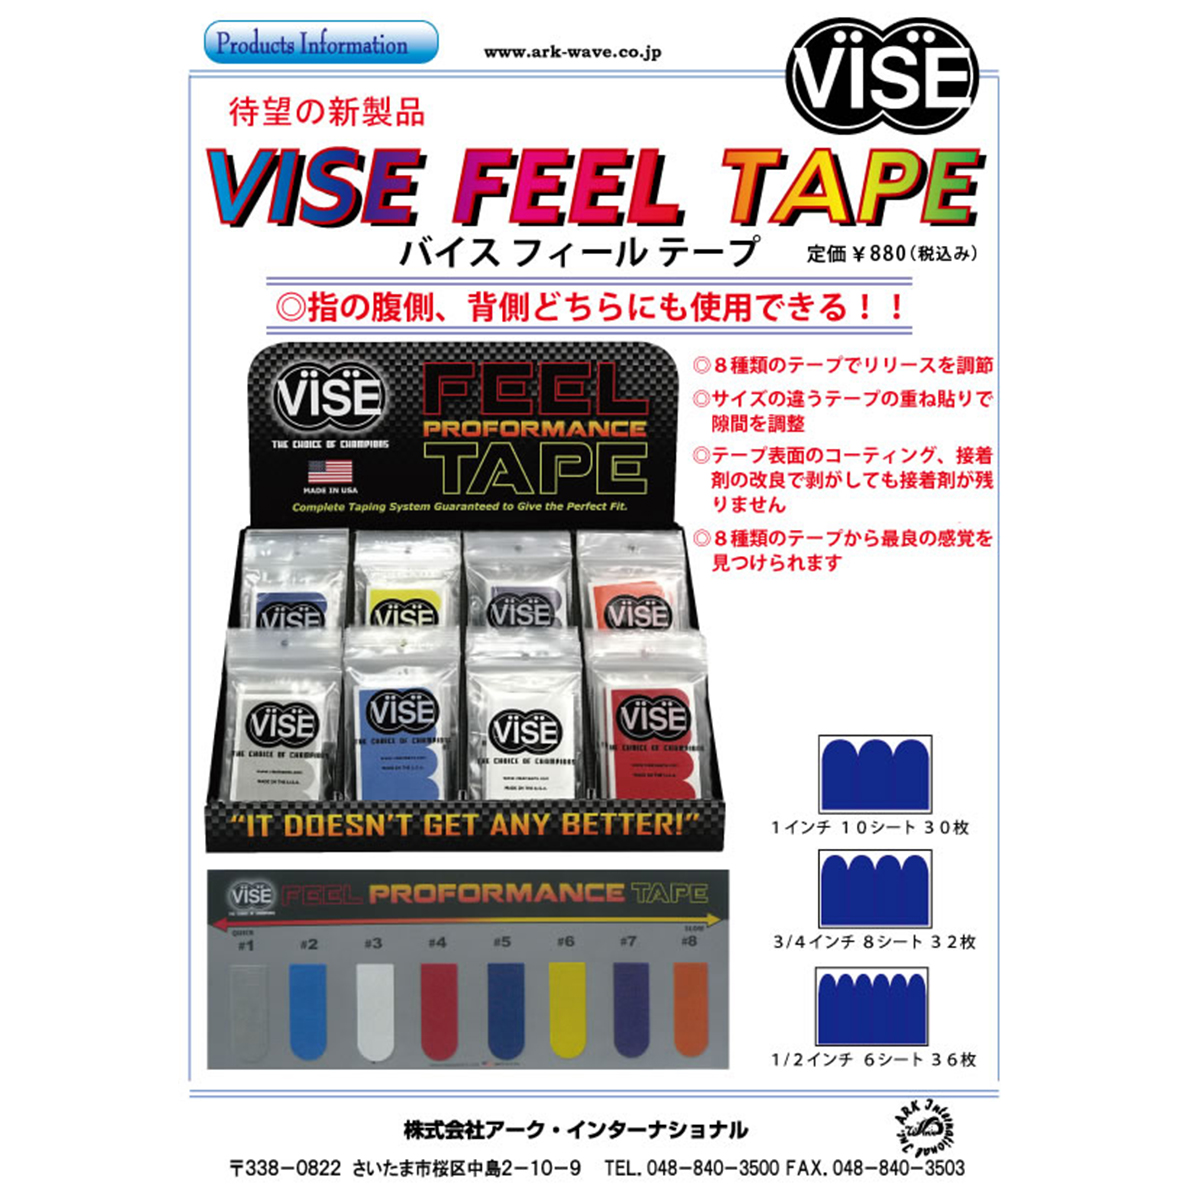 VISE フィールテープ#5(青色) - ウインドウを閉じる